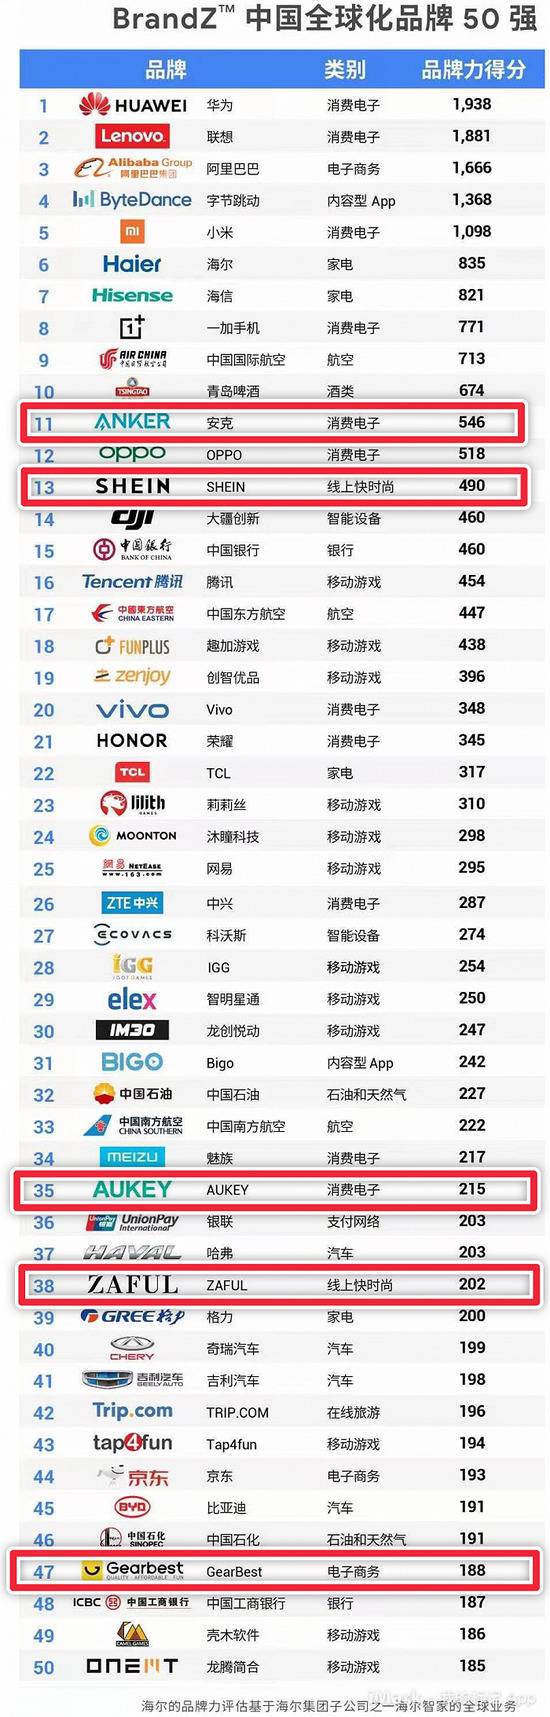 数据来源：《BrandZ™中国全球化品牌50强》，2020